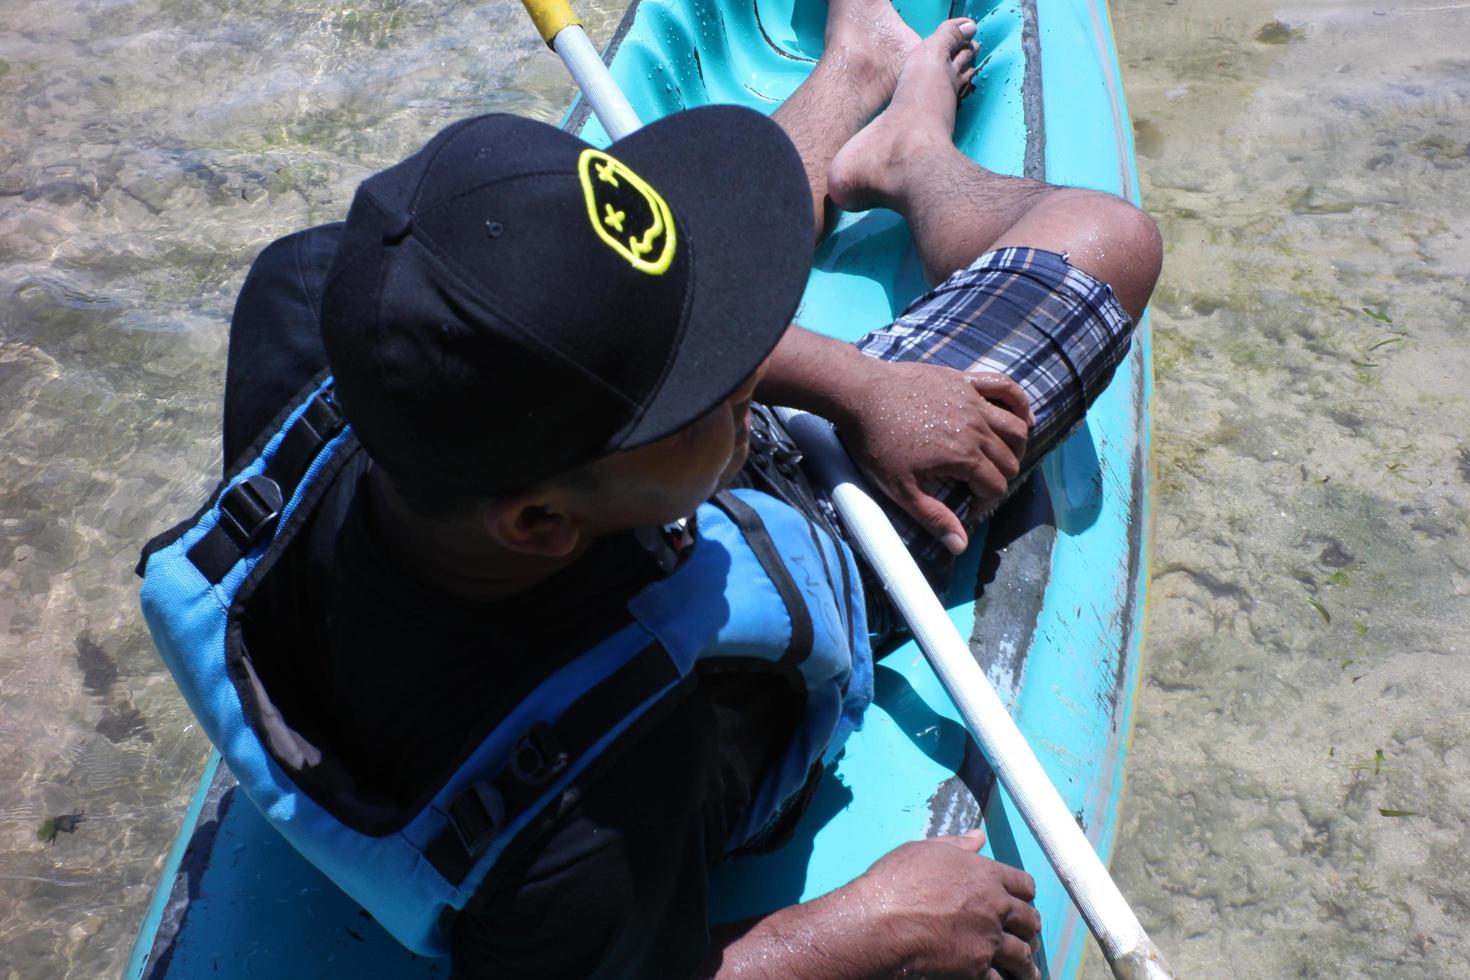 yogyakarta, indonésie 18 09 2022 .un homme prend un bain de soleil sur un petit bateau bleu. photo